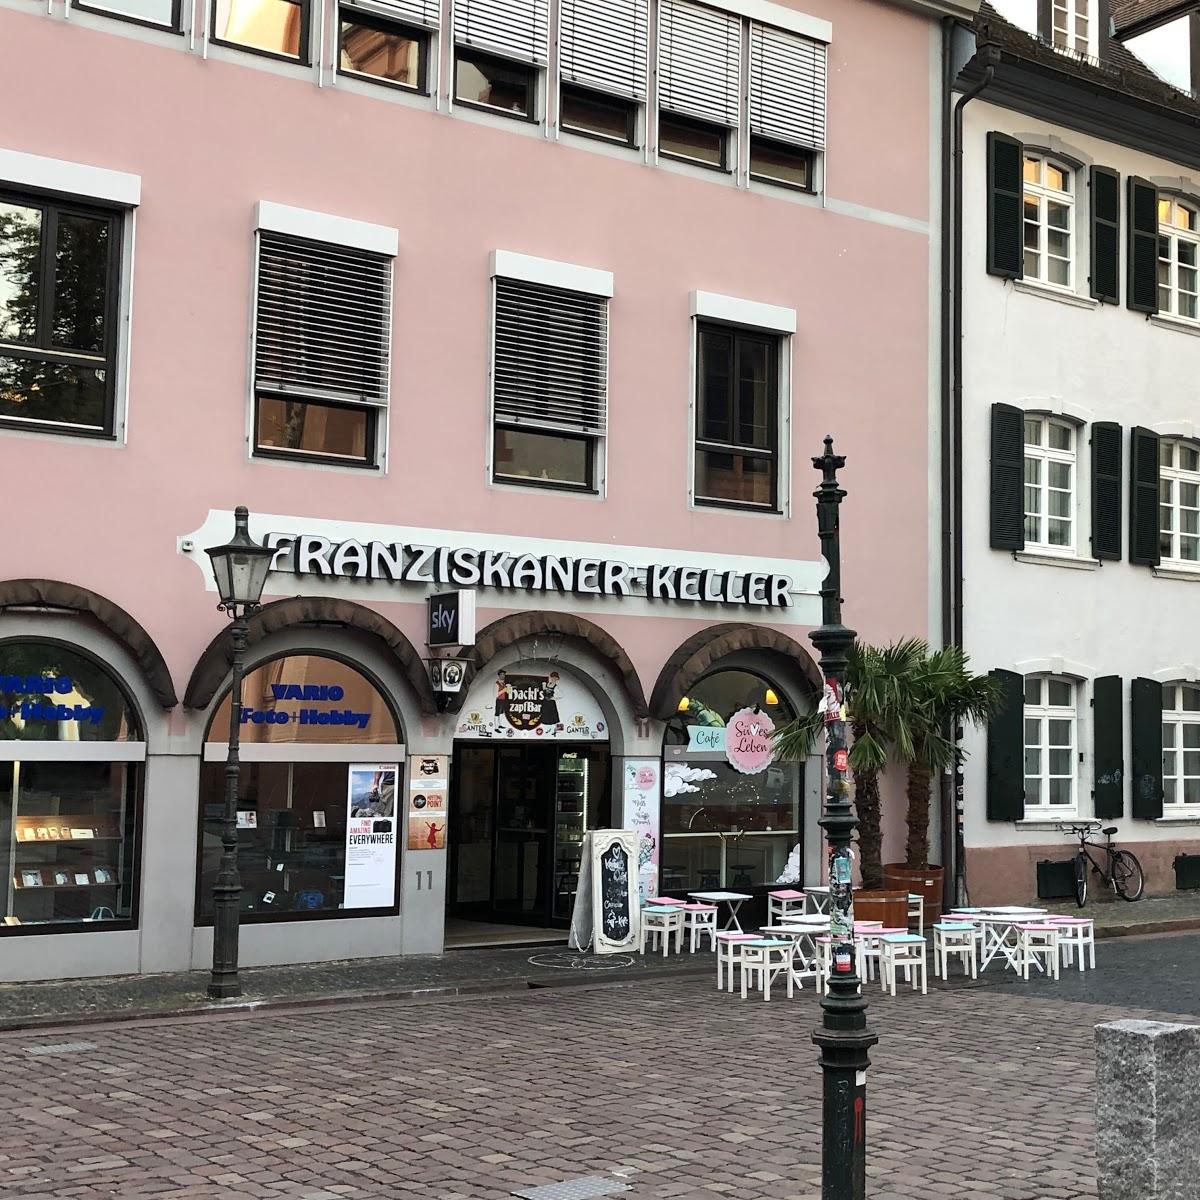 Restaurant "Hackls ZapfBar" in Freiburg im Breisgau